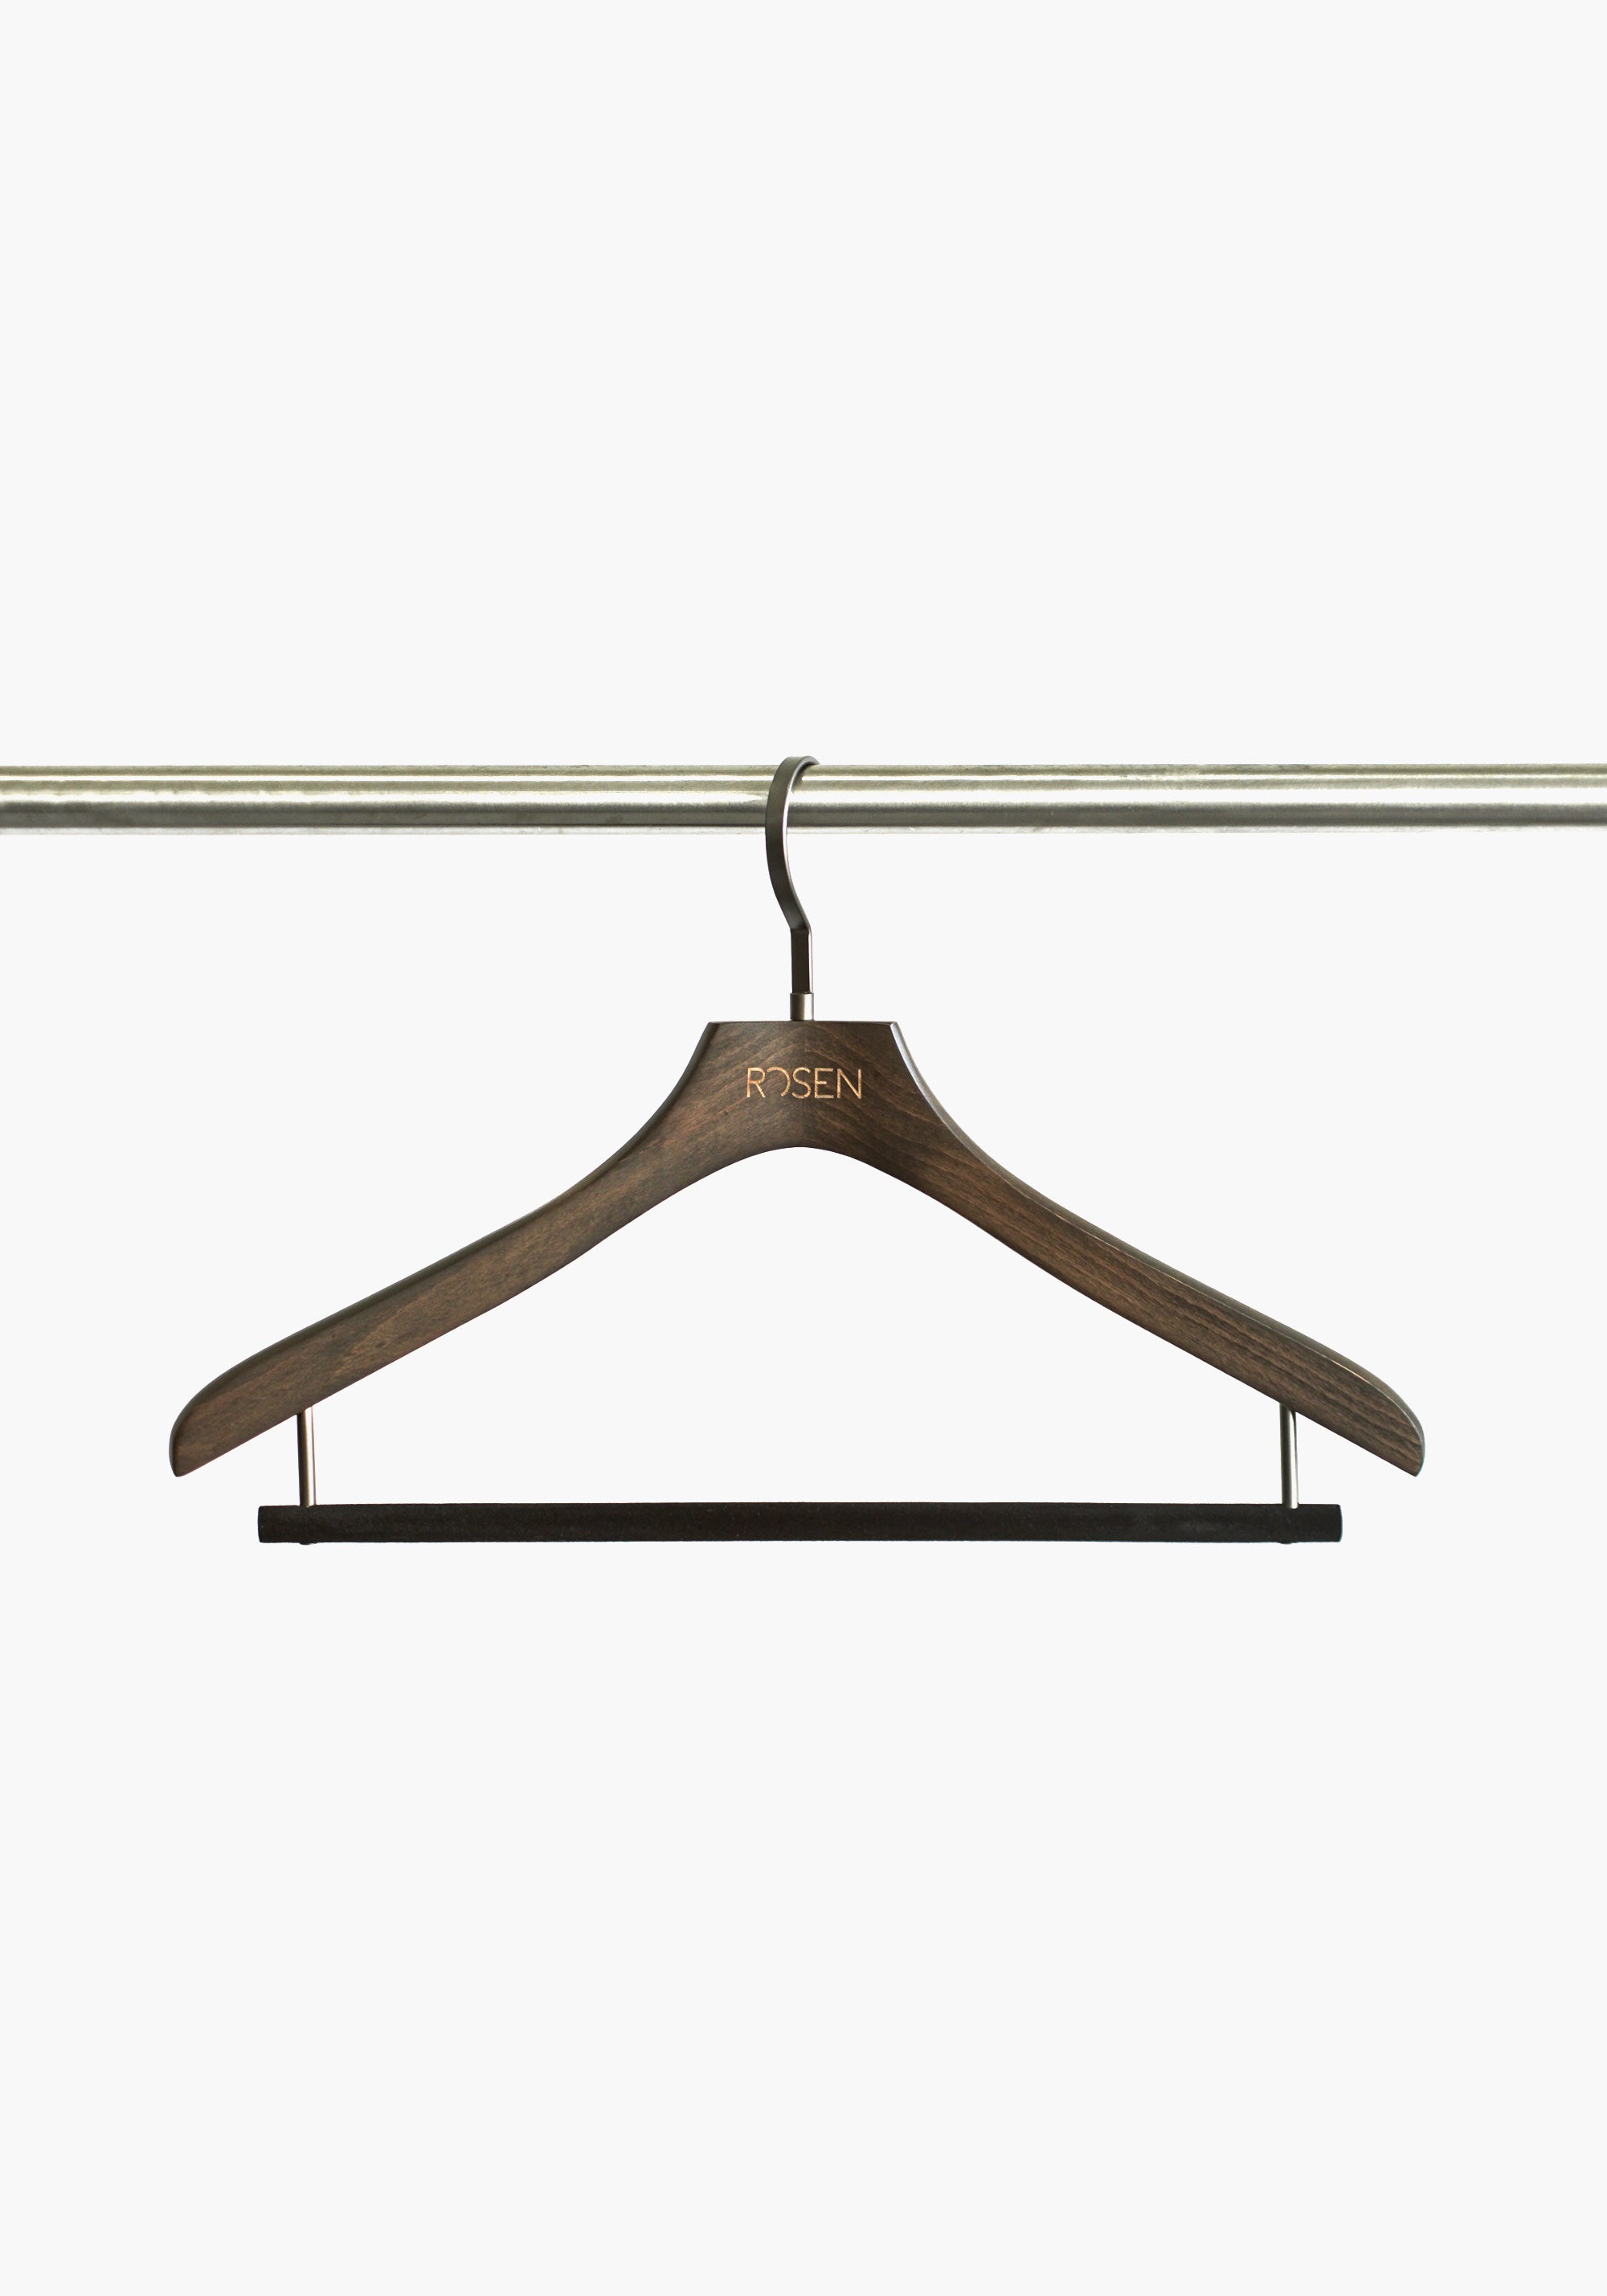 ROSEN Wood Garment Hangers